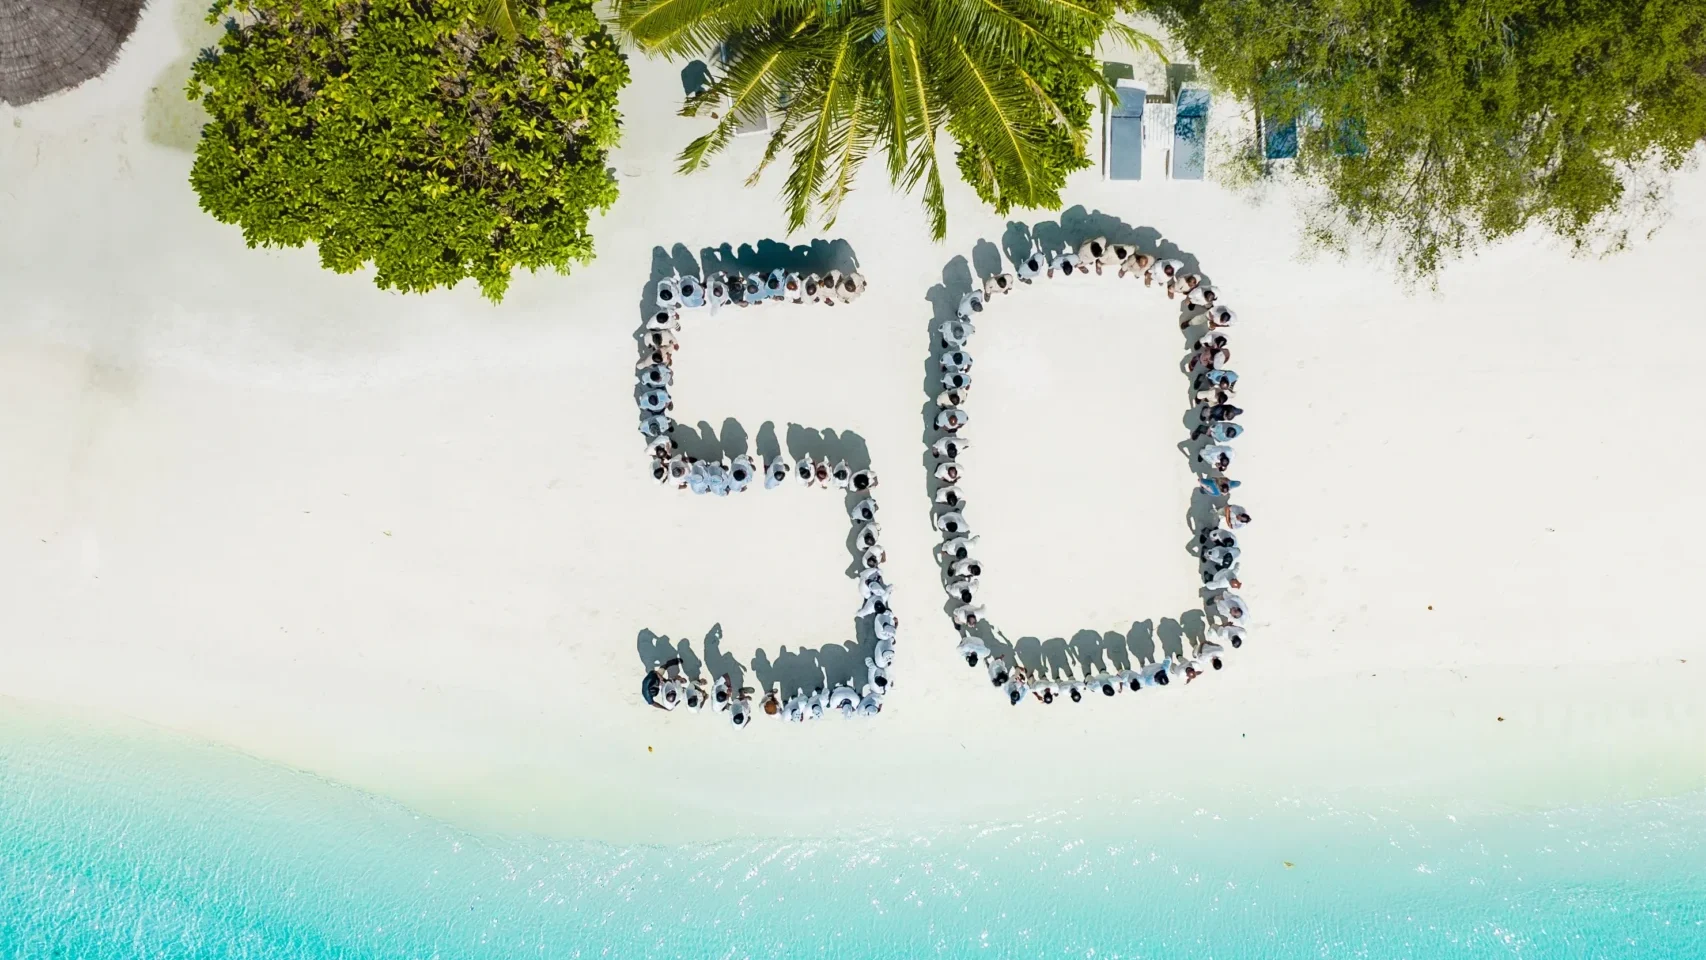 Sharon Maldives Celebrates 50 Years